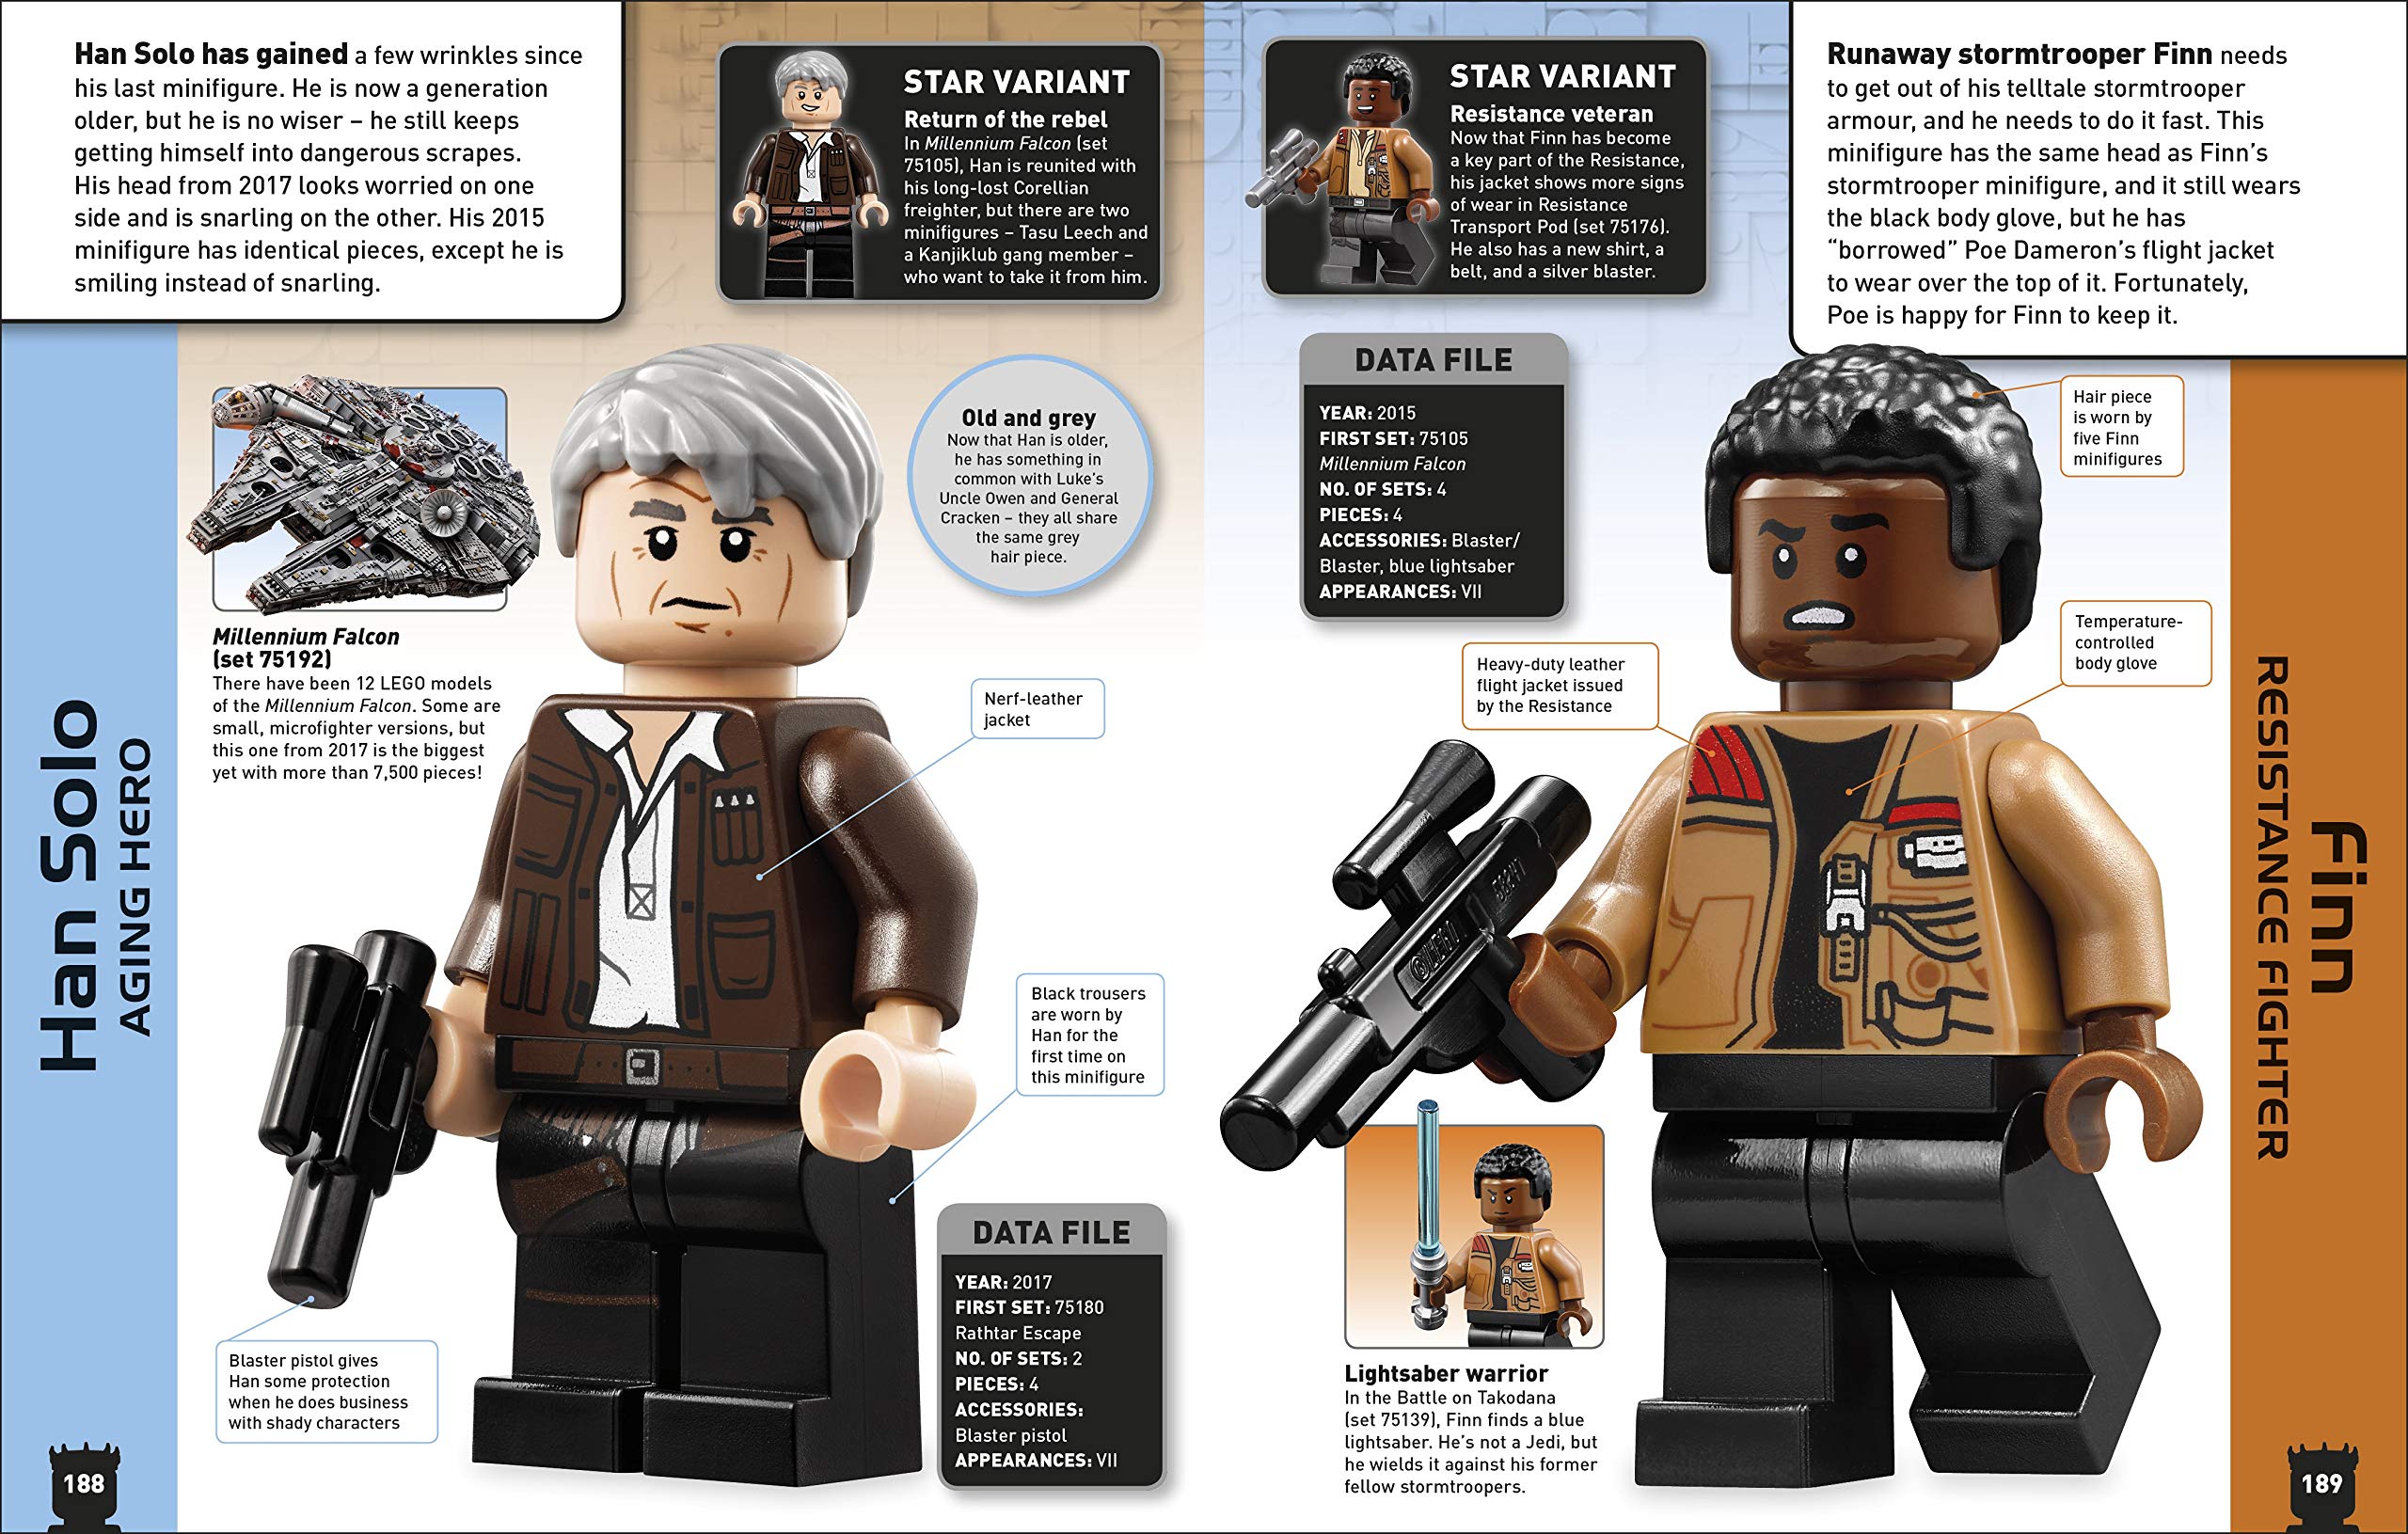 Star Wars – Une encyclopédie pas comme les autres avec tous les personnages  LEGO - IDBOOX